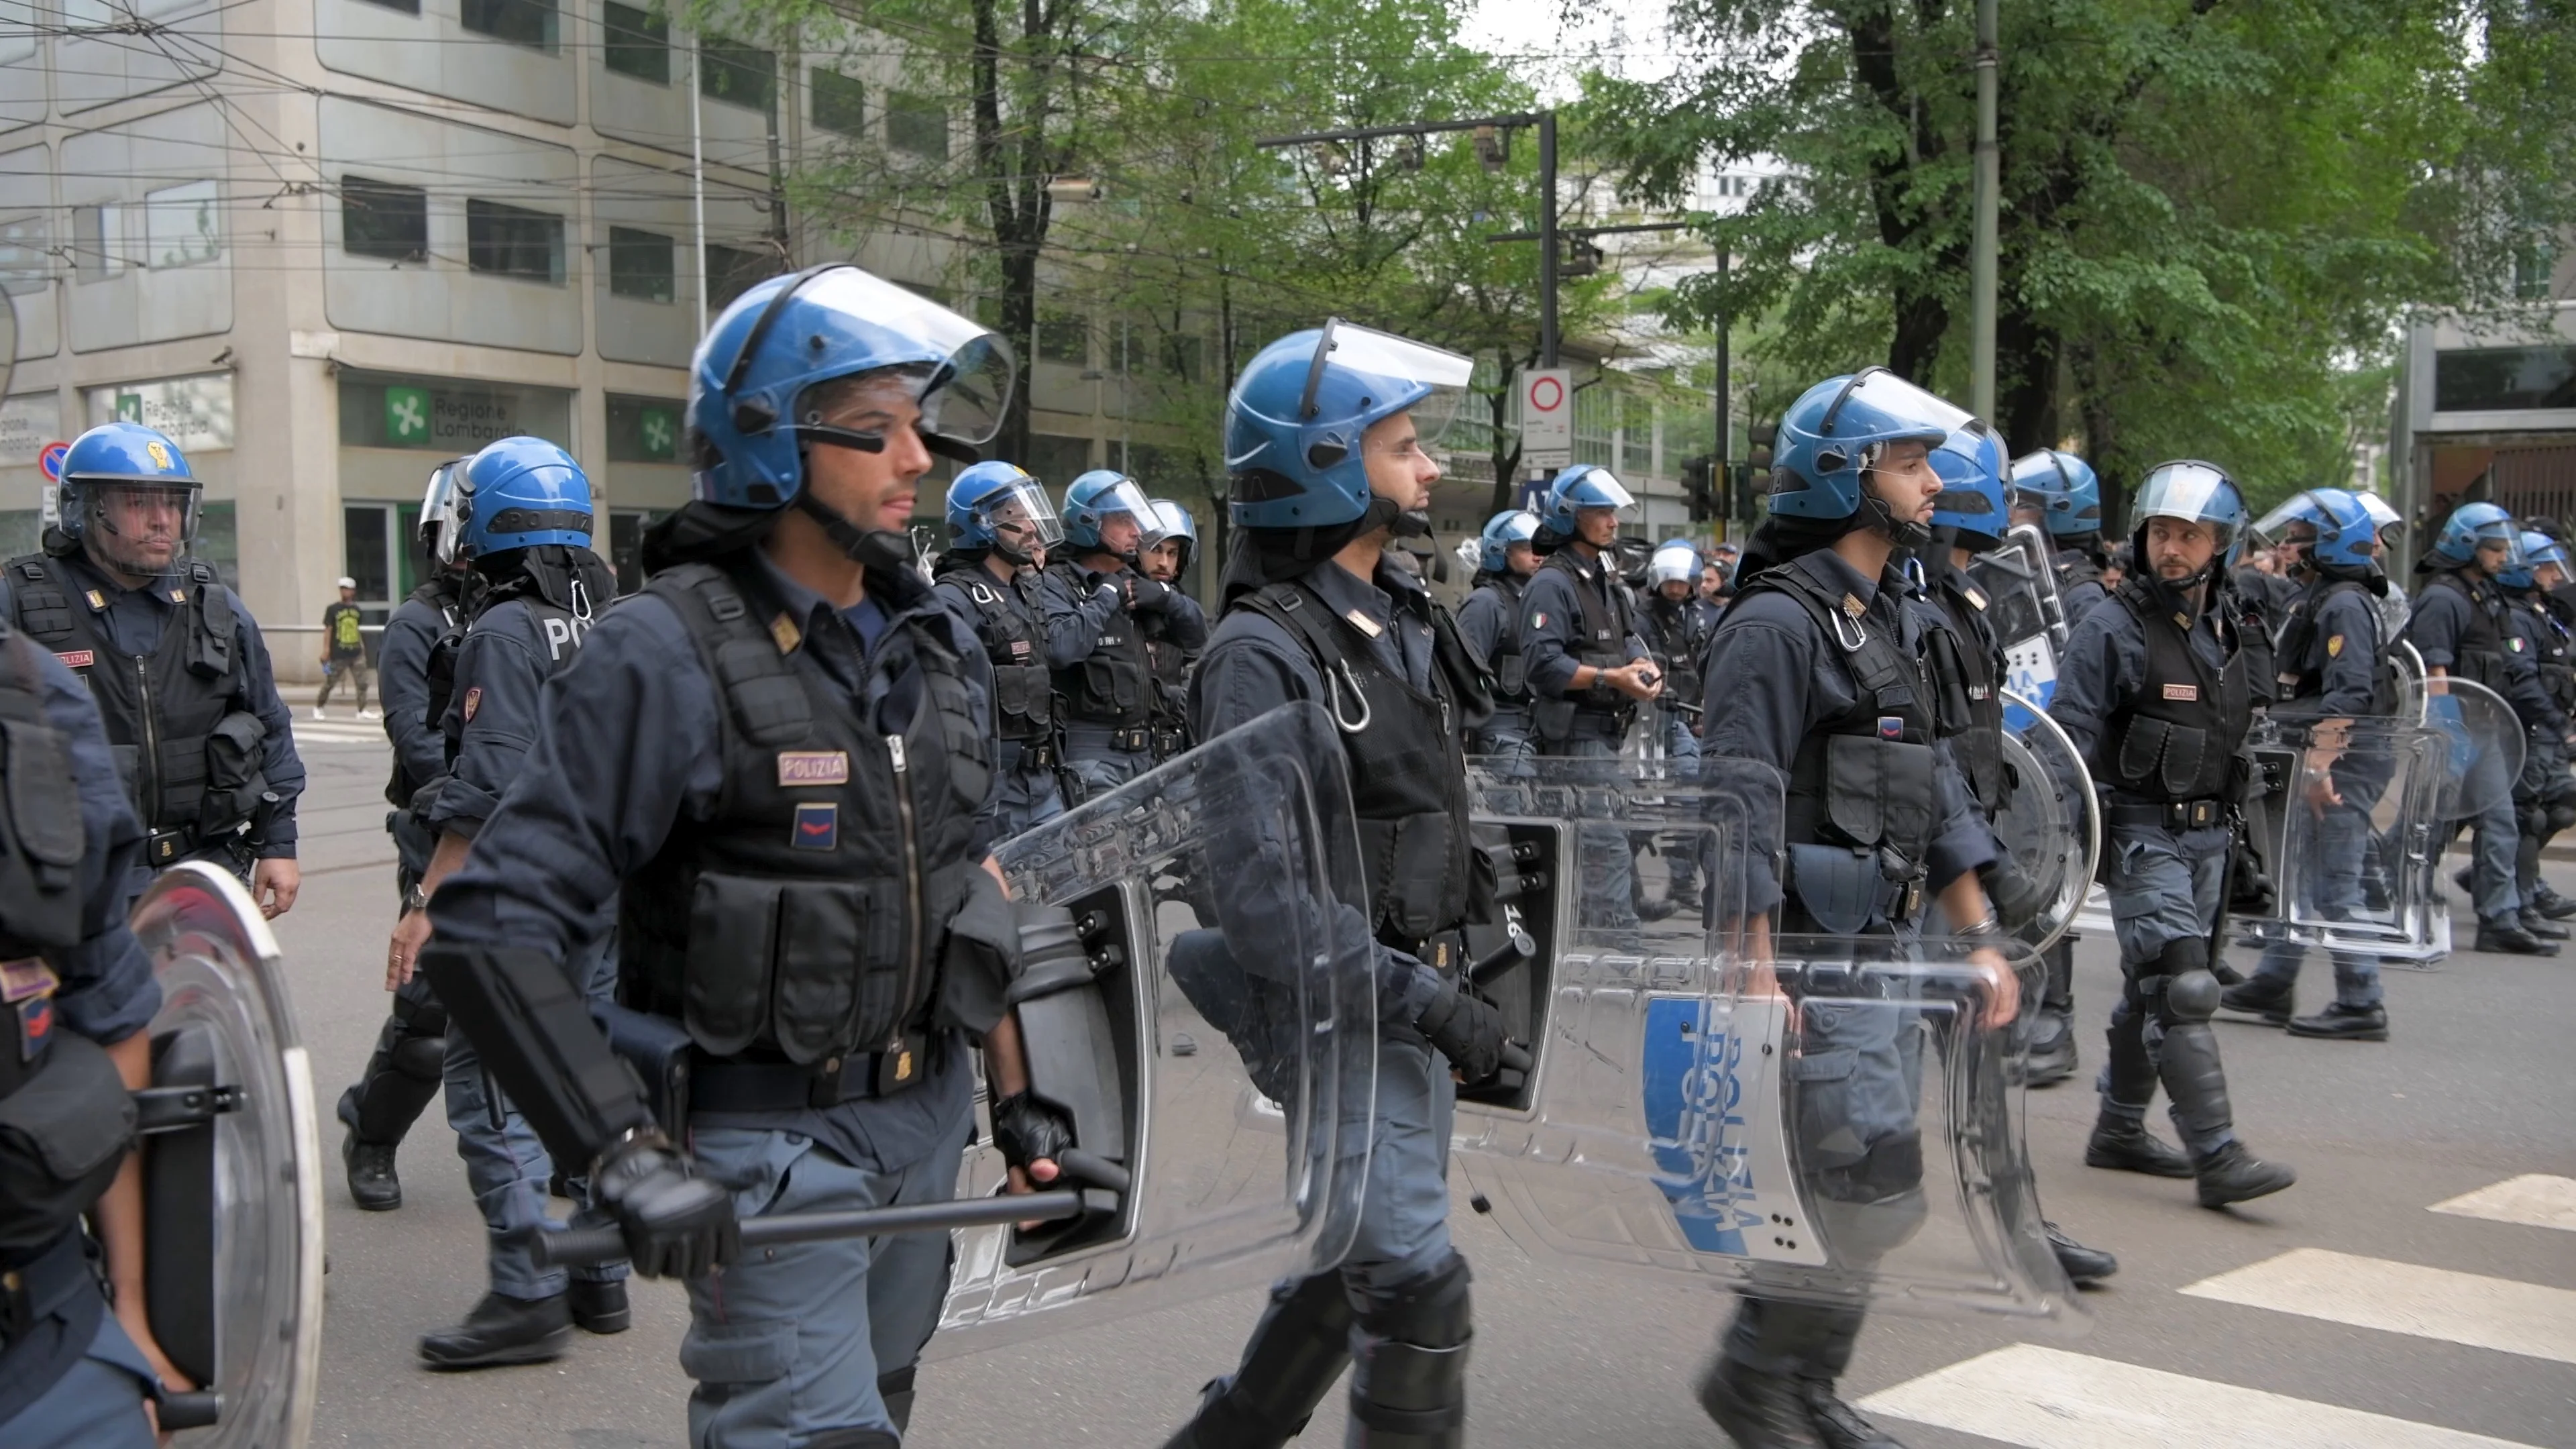 italian-riot-police-officers-walk-089423799_prevstill.jpeg